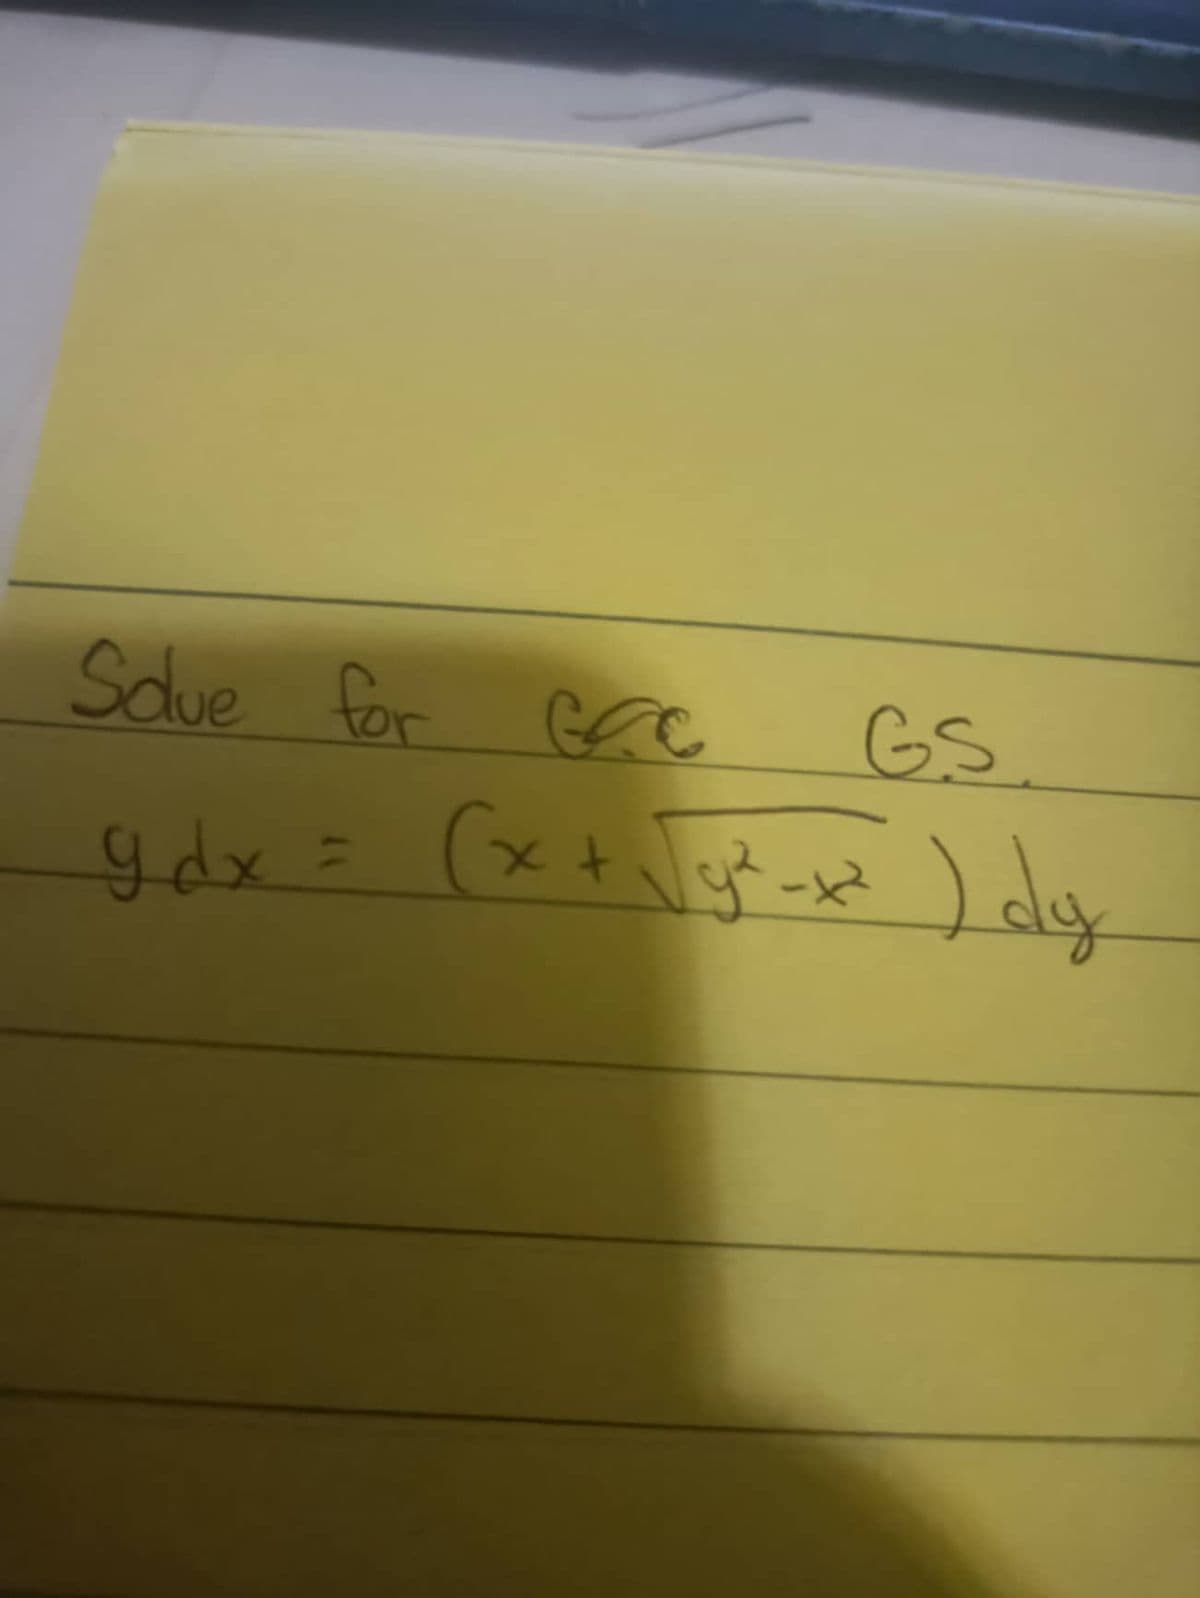 Souve for GCC
9dx = (x +
GS
(x + √√g²-x²) dy